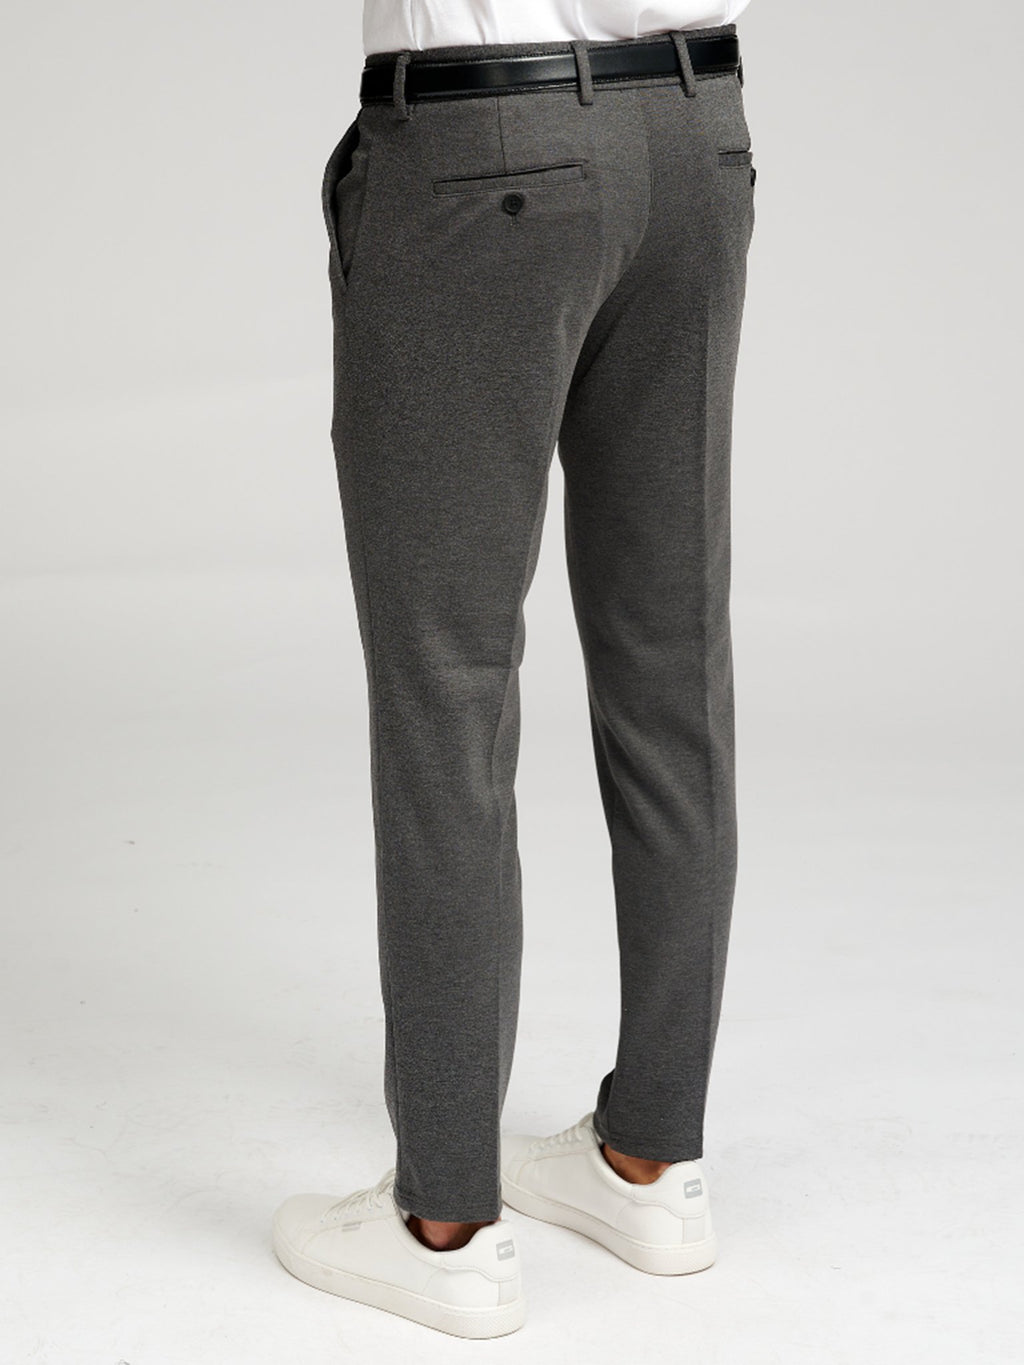 原始性能裤子 - 深灰色